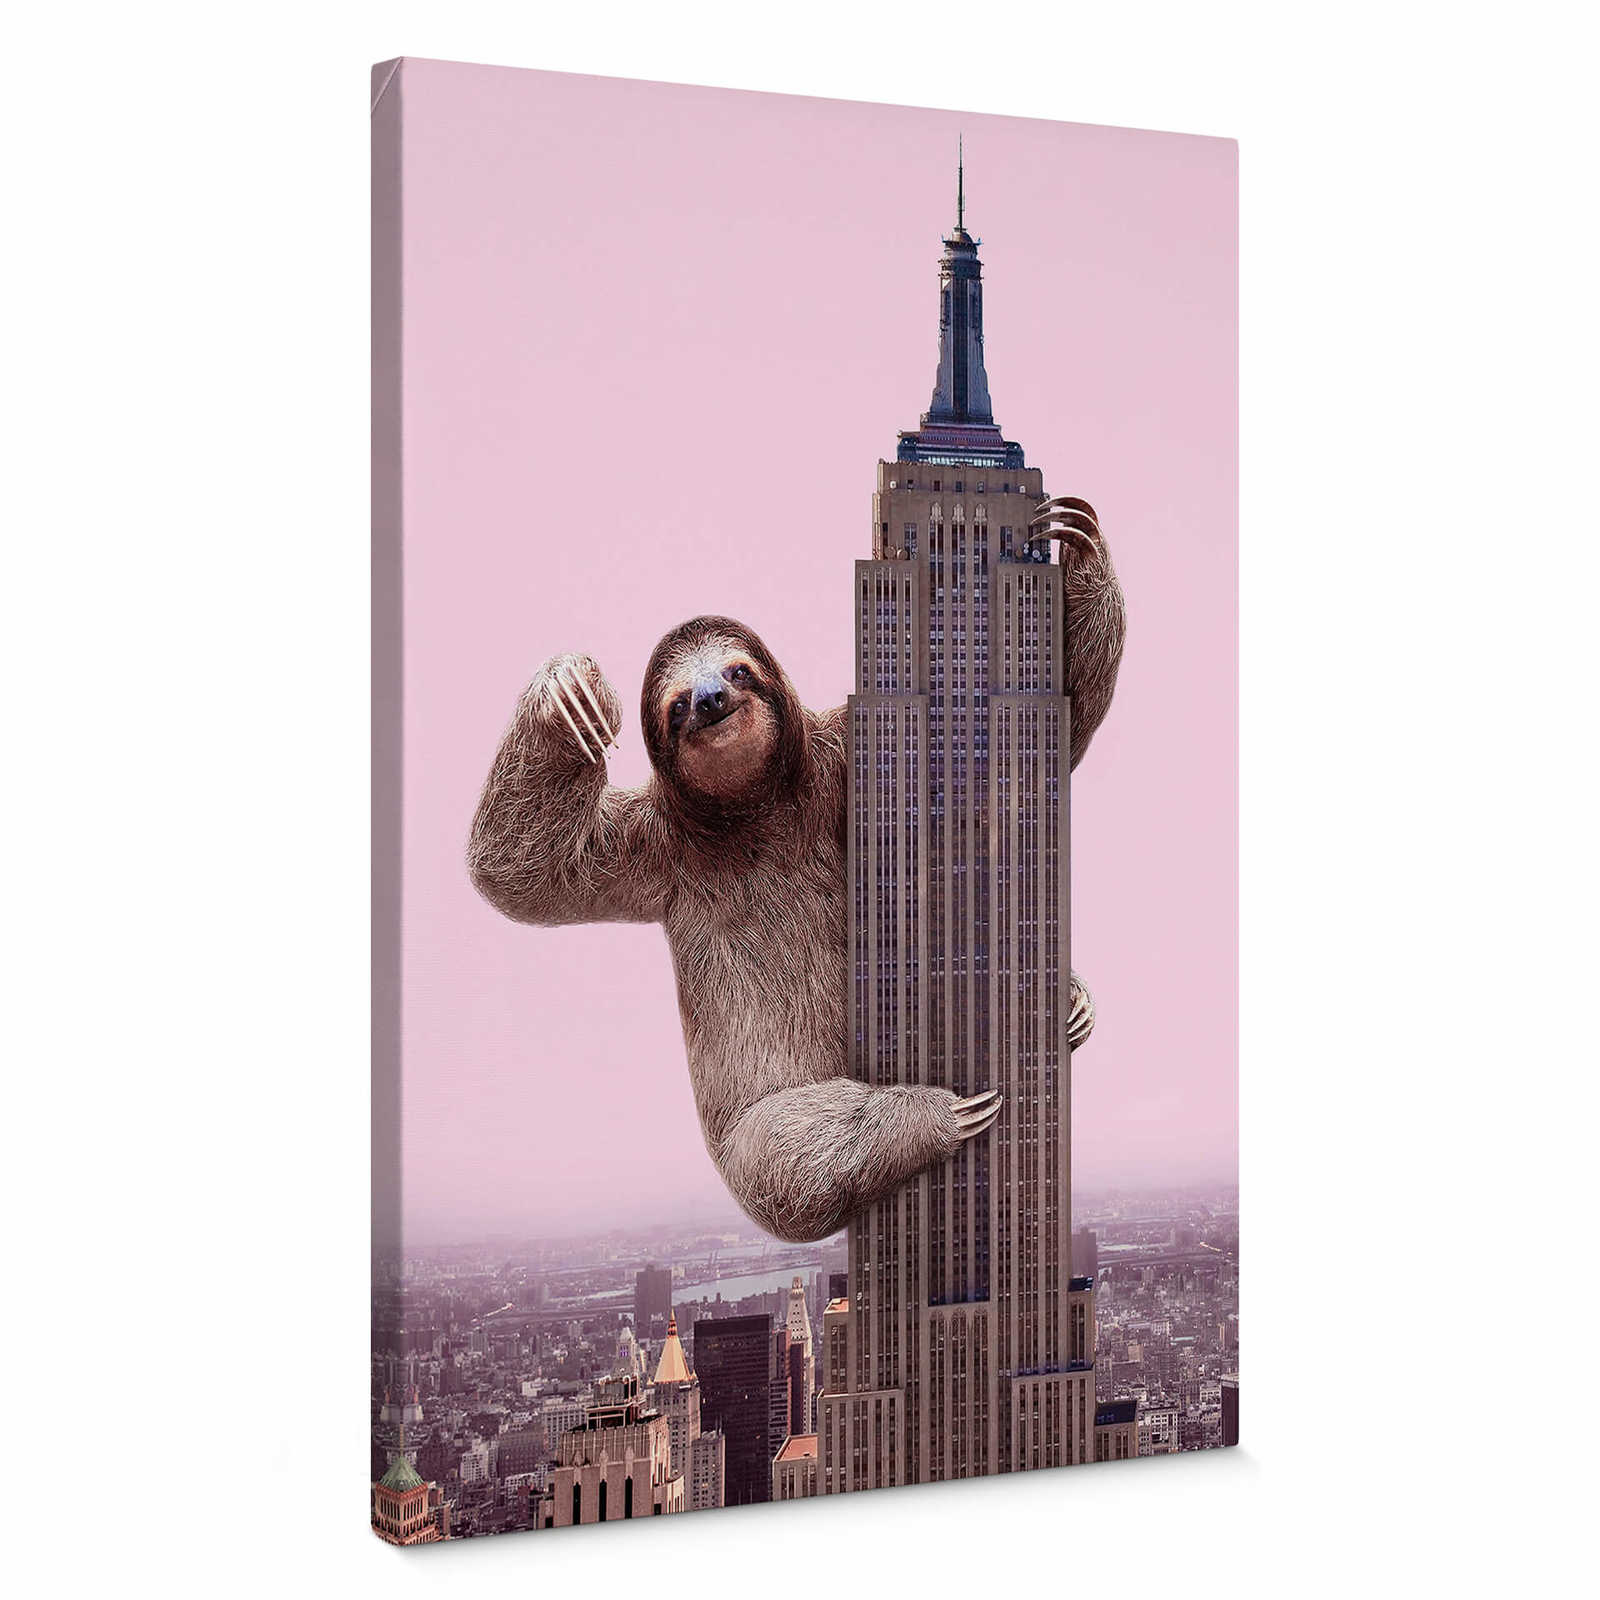         Leinwandbild Faultier von Fuentes, "King Sloth" – 0,50 m x 0,70 m
    